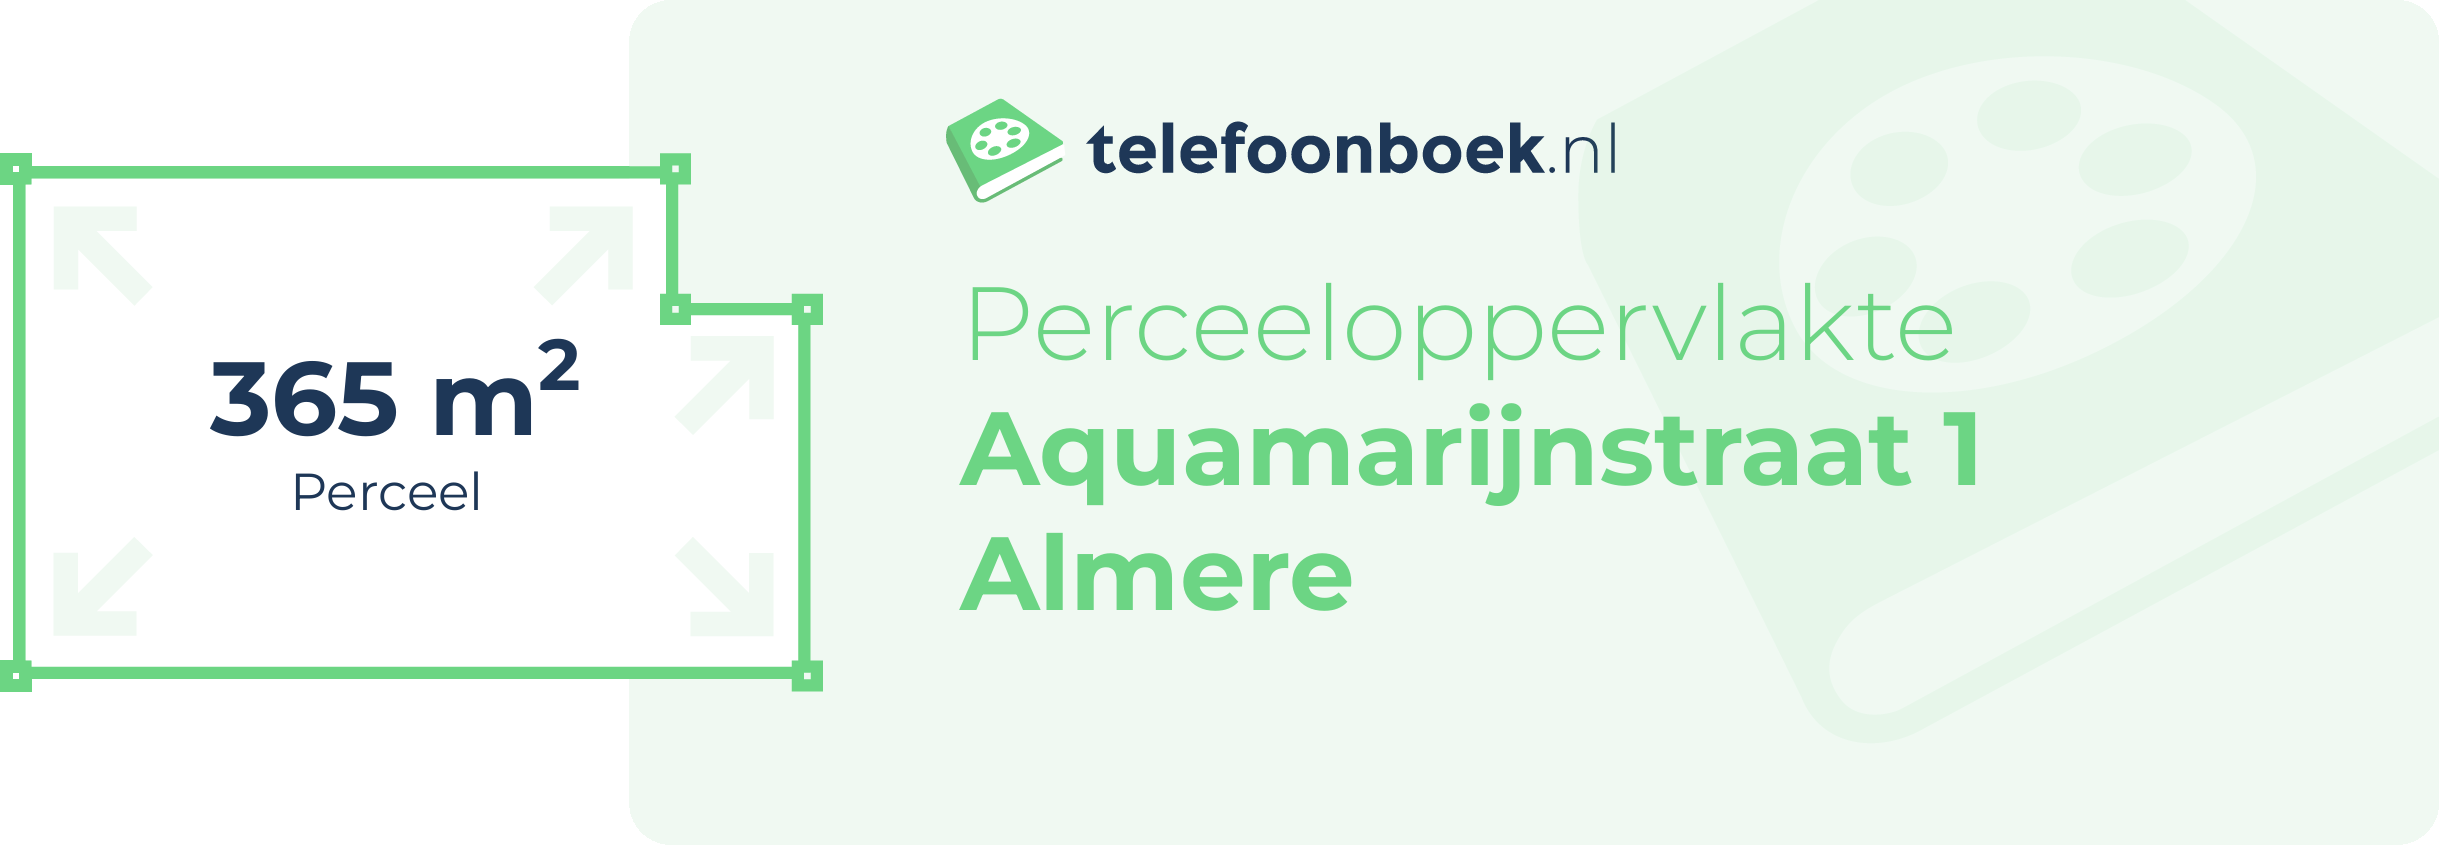 Perceeloppervlakte Aquamarijnstraat 1 Almere